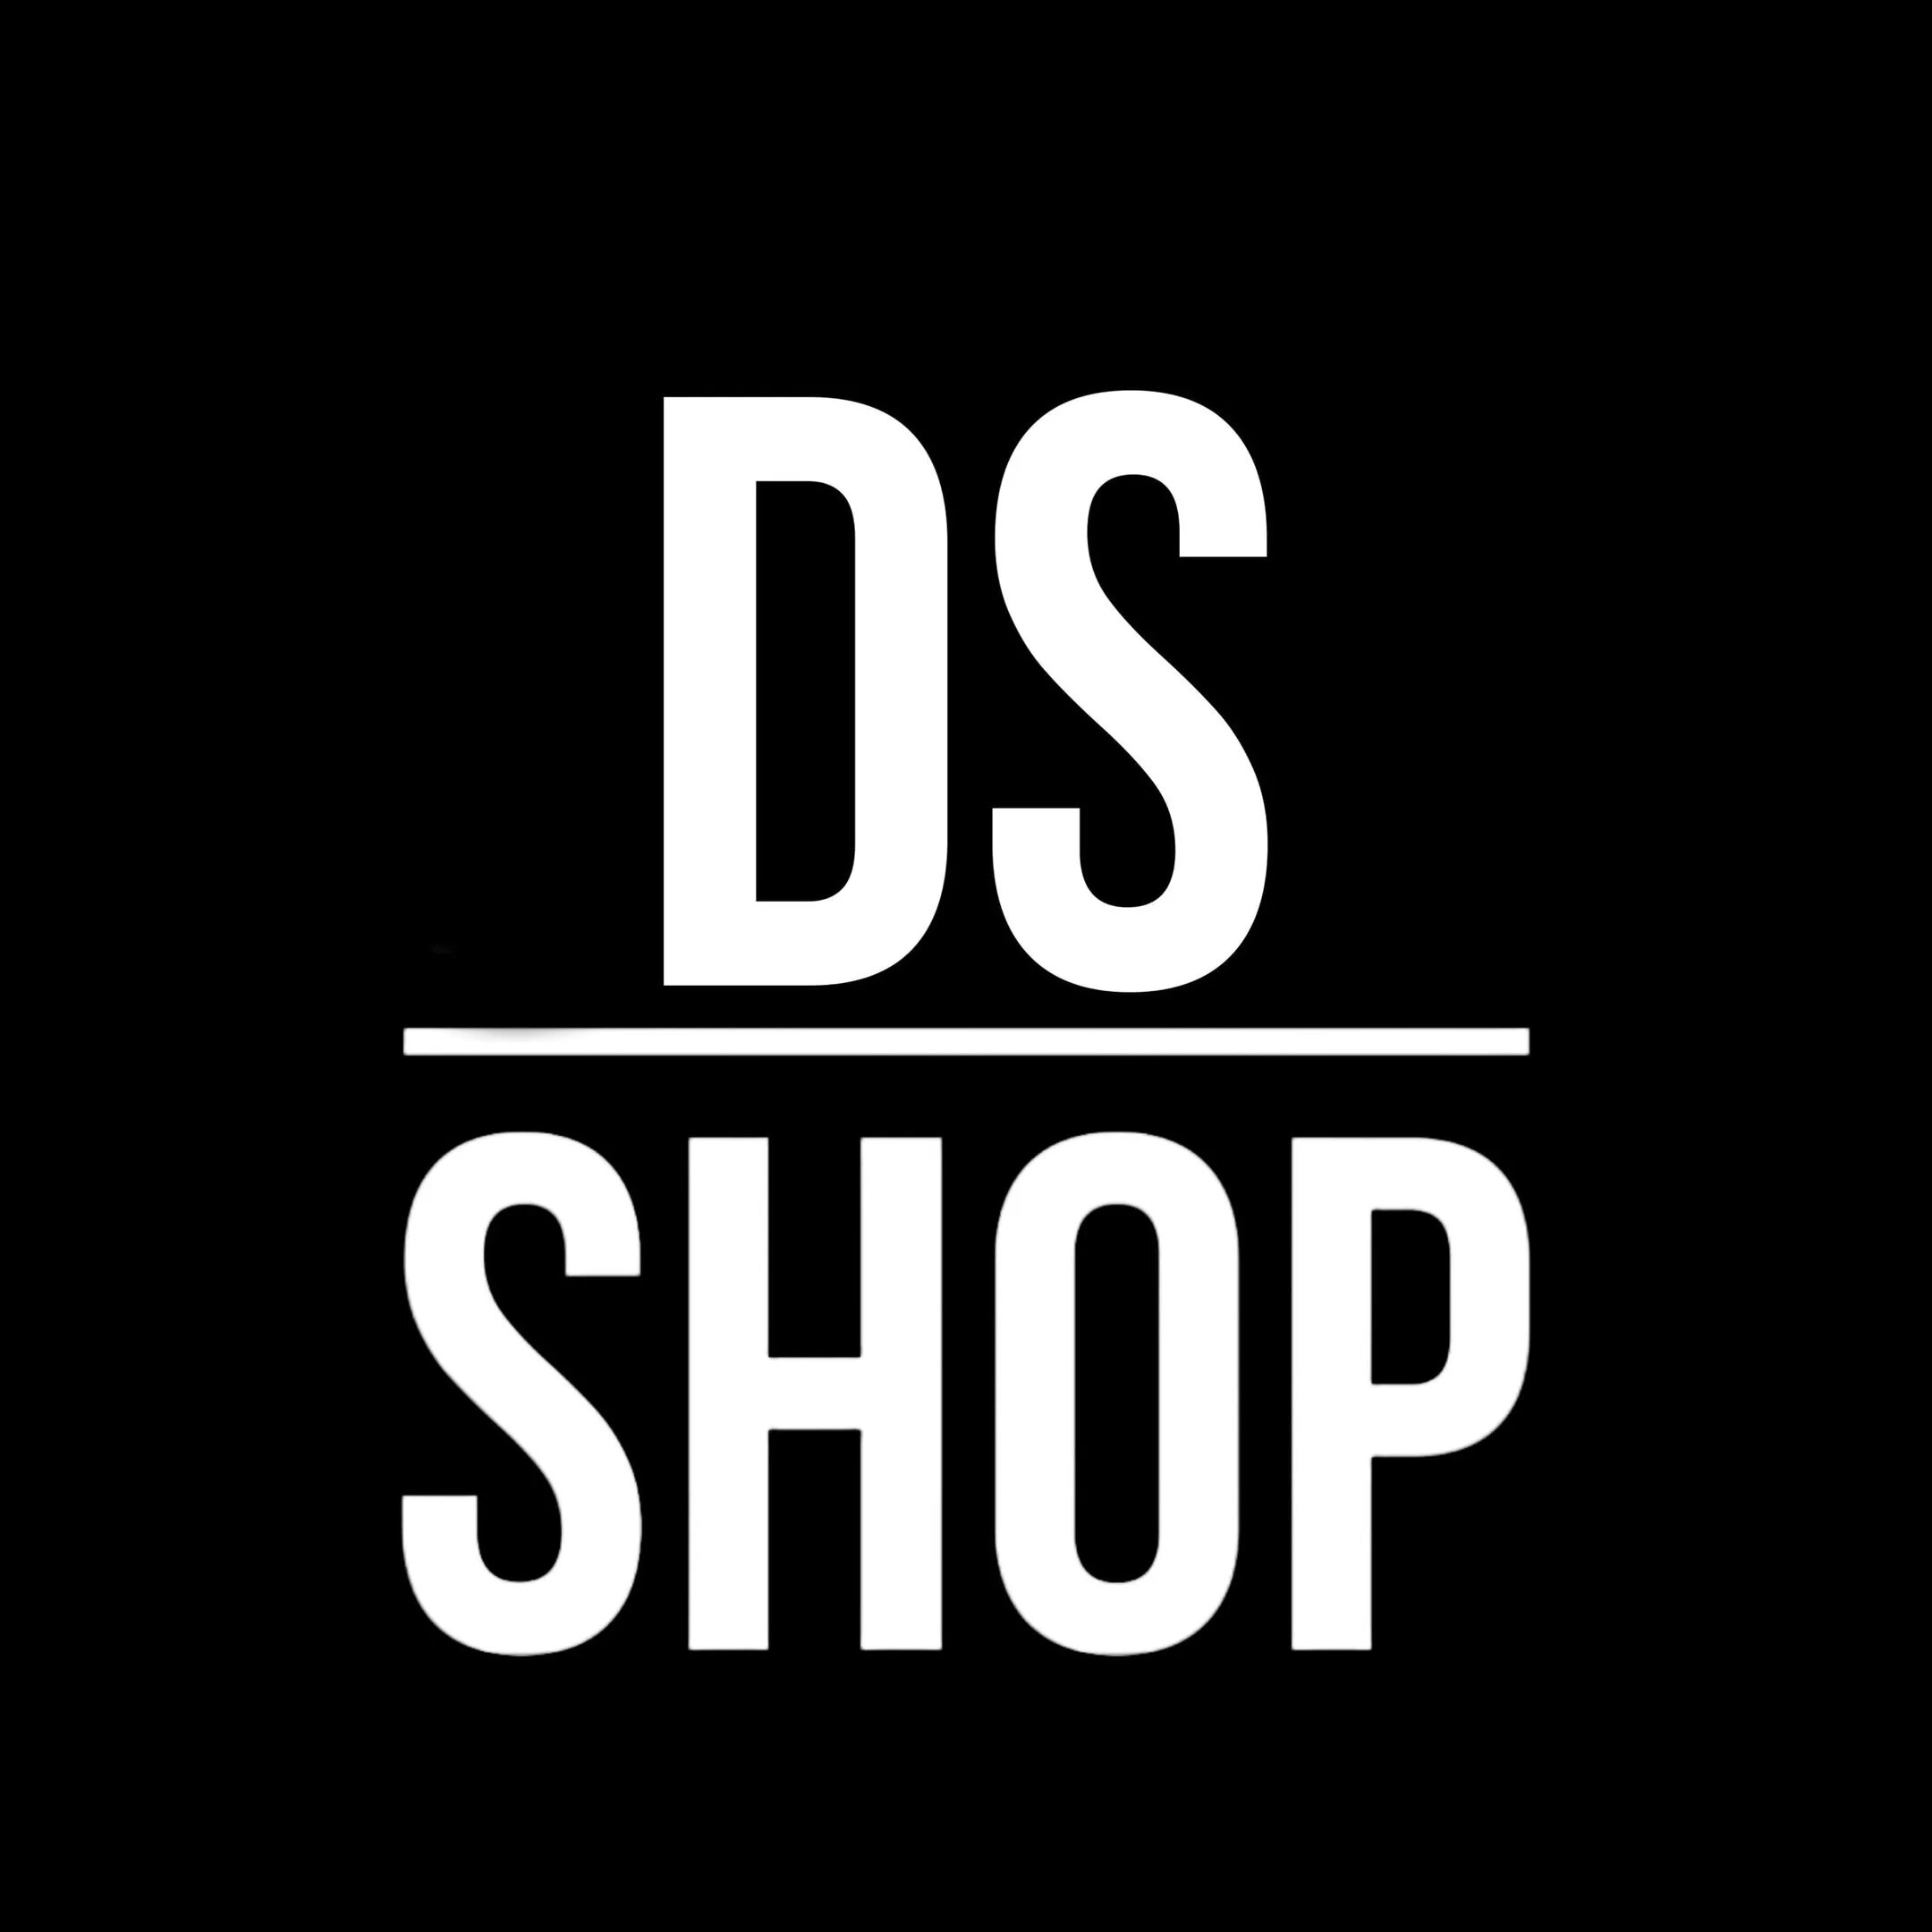 DS shop. Картинки ДС шоп. DS shop logo. Надпись shop для ДС анимированная.